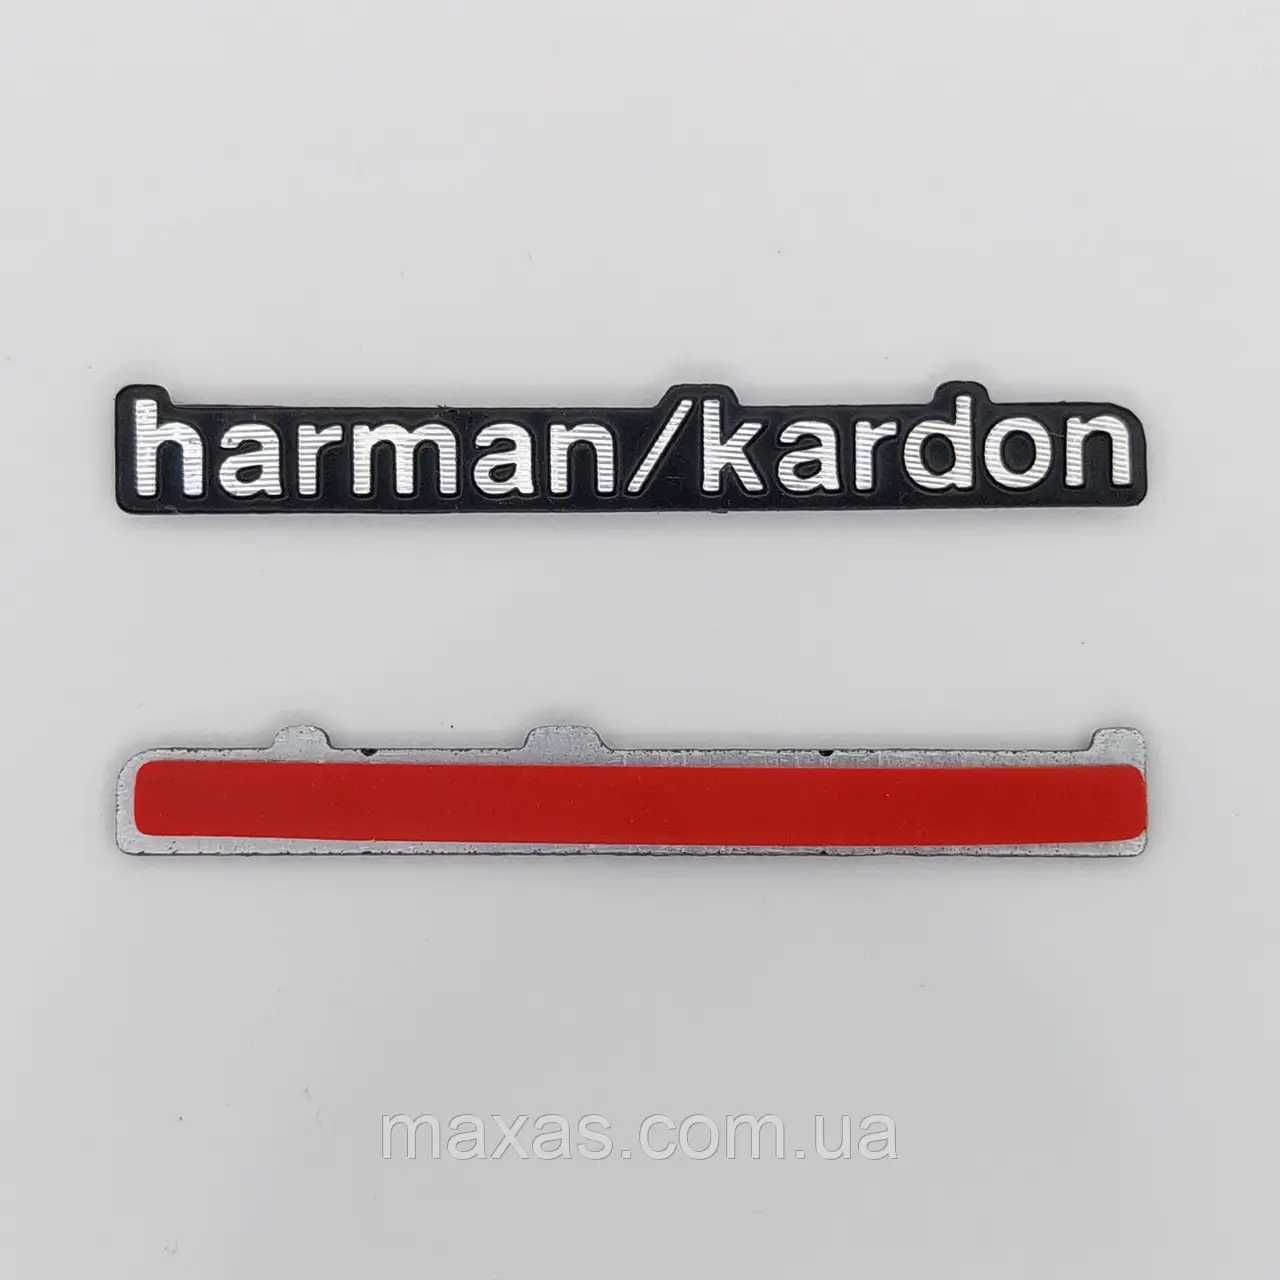 Эмблема Harman Kardon наклейка для акустических систем